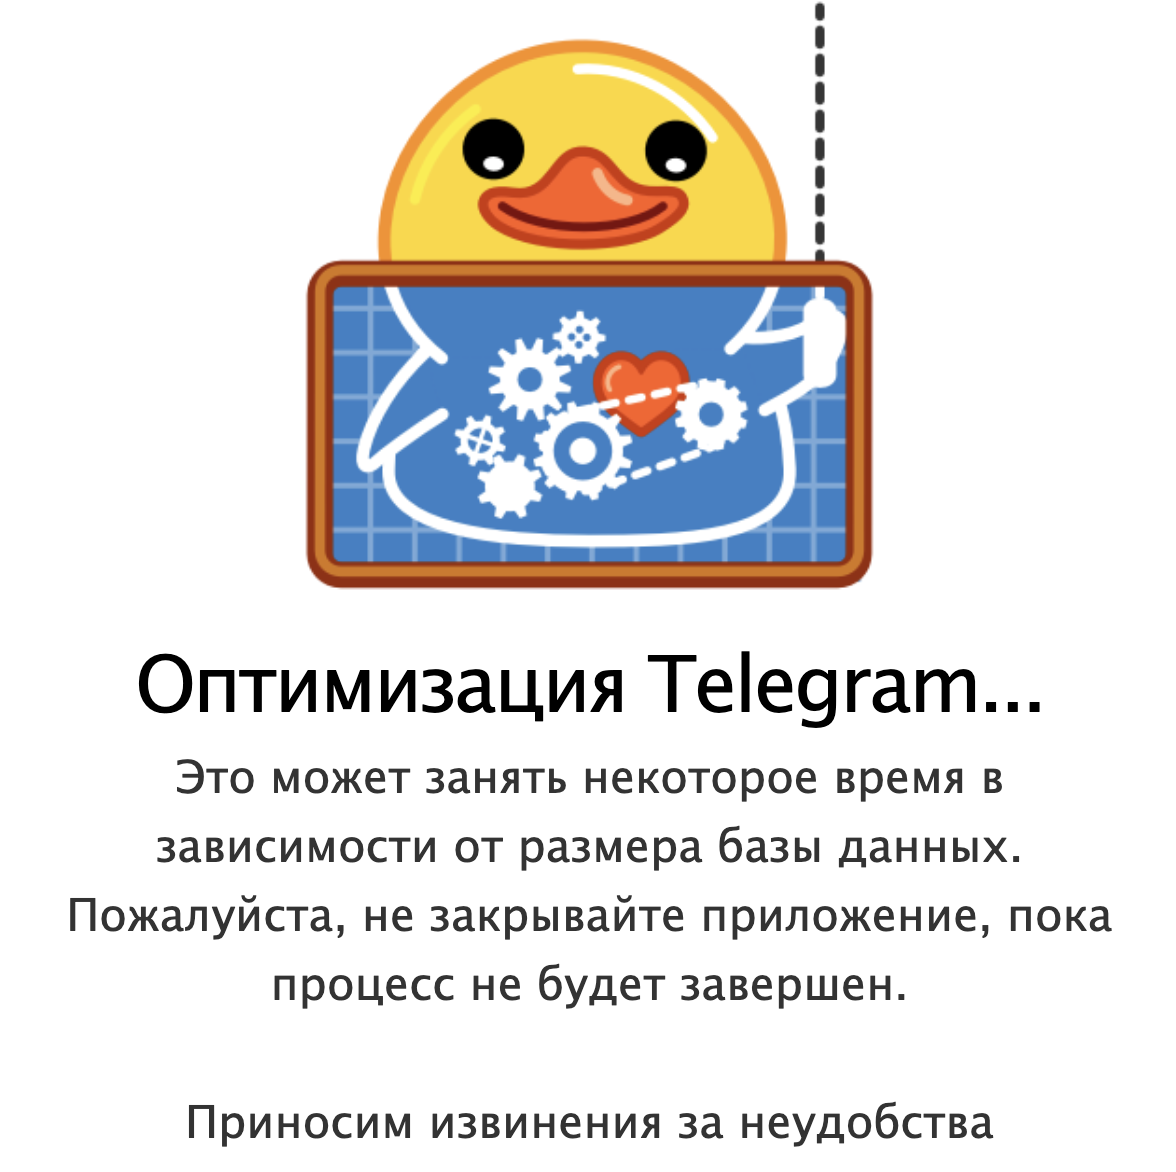 Языки в телеграмме милые на андроид фото 93